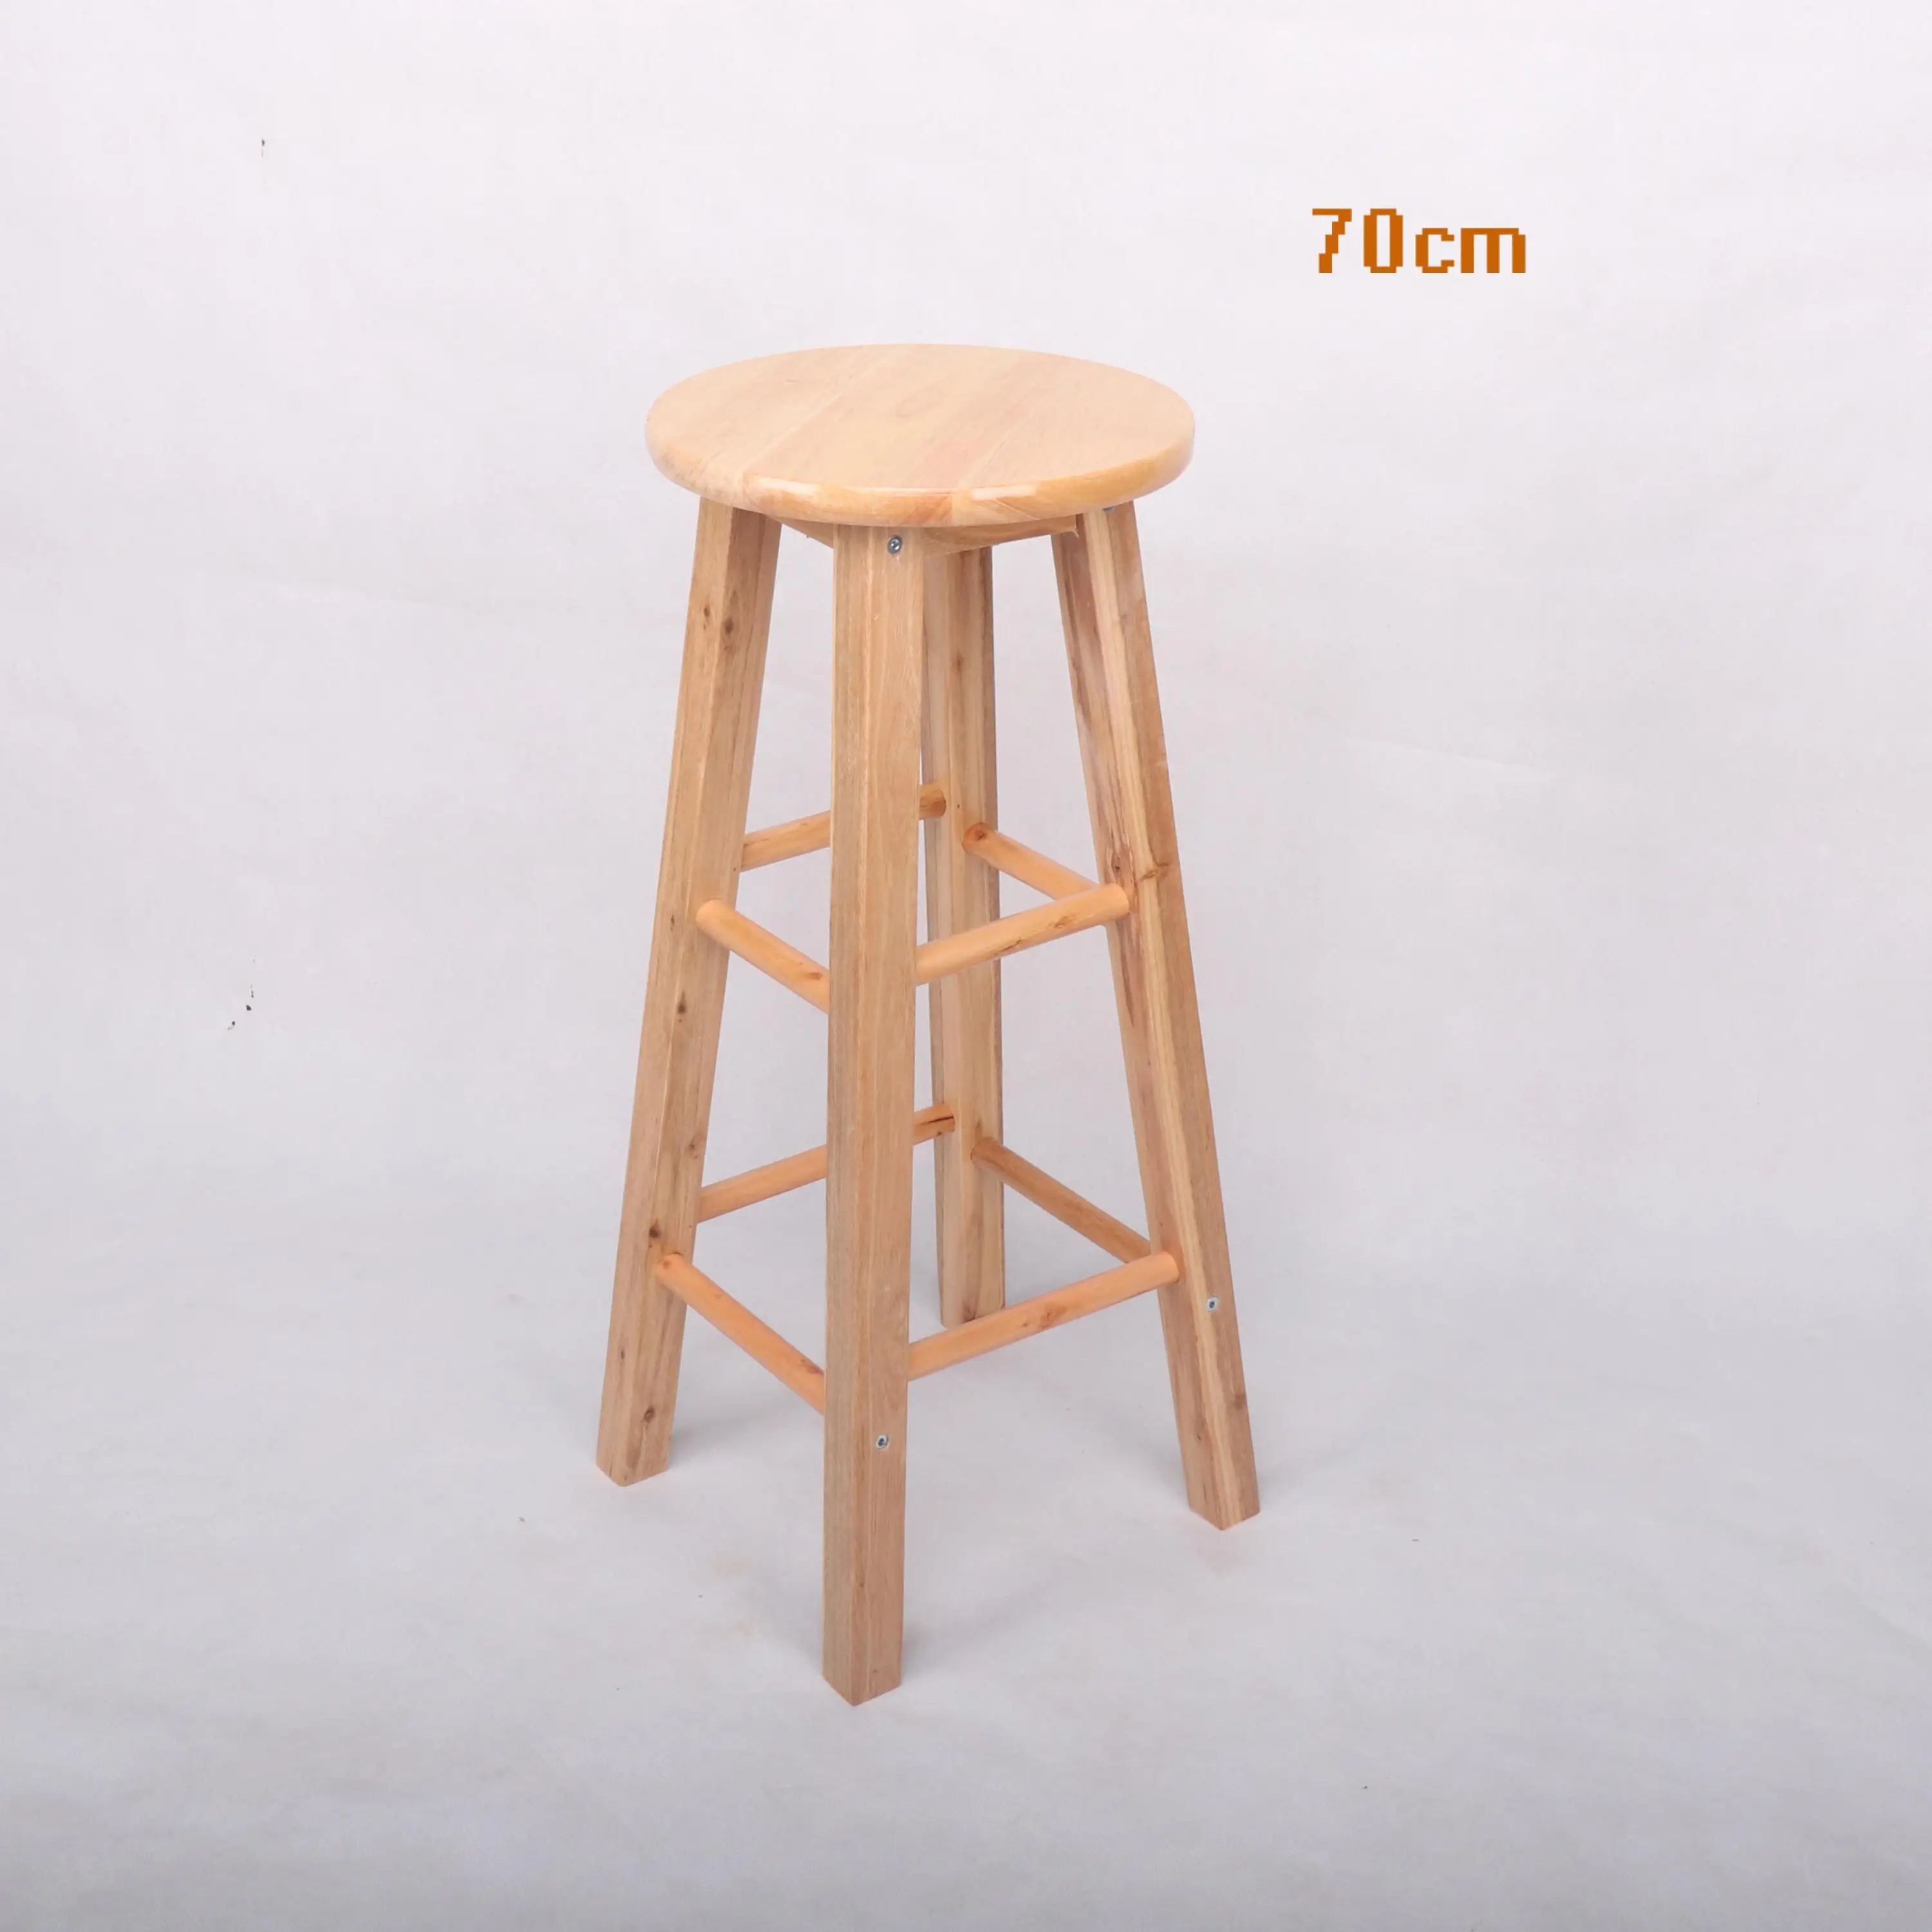 Твердый деревянный барный стул высокий барный стул резиновый деревянный стул-лестница высокий барный стул - Цвет: 70cm high